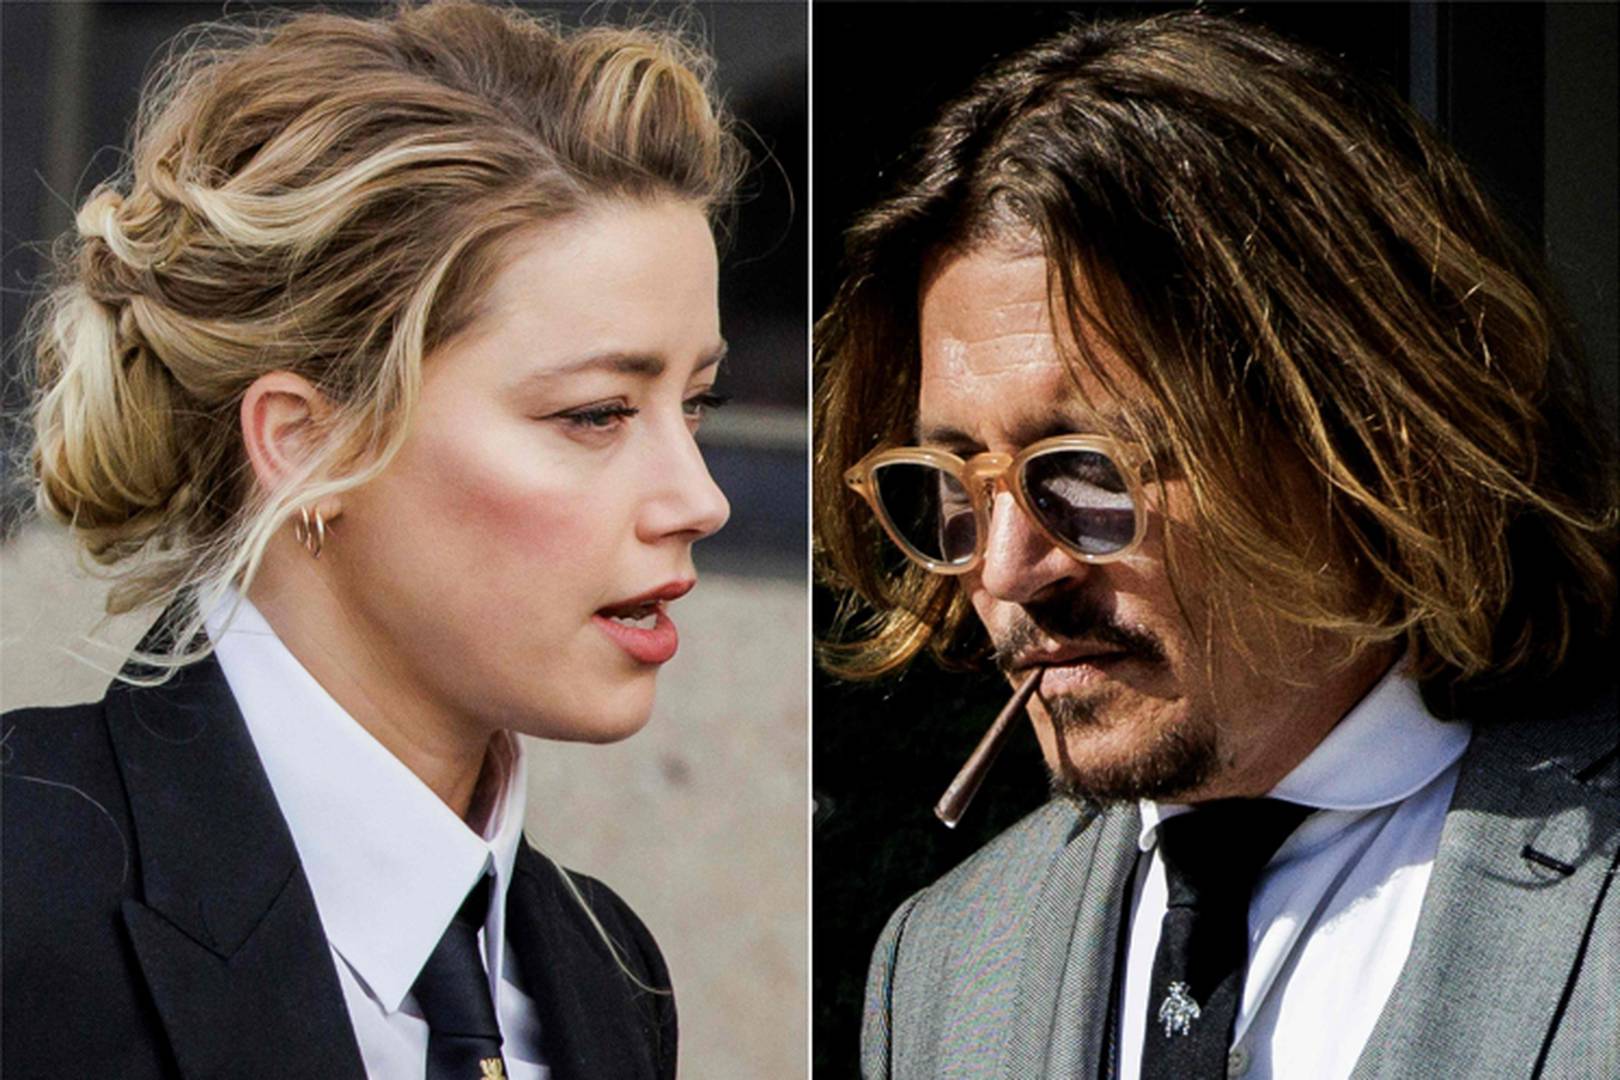 Procès de Johnny Depp & Amber Heard : Rebondissements sur l’affaire